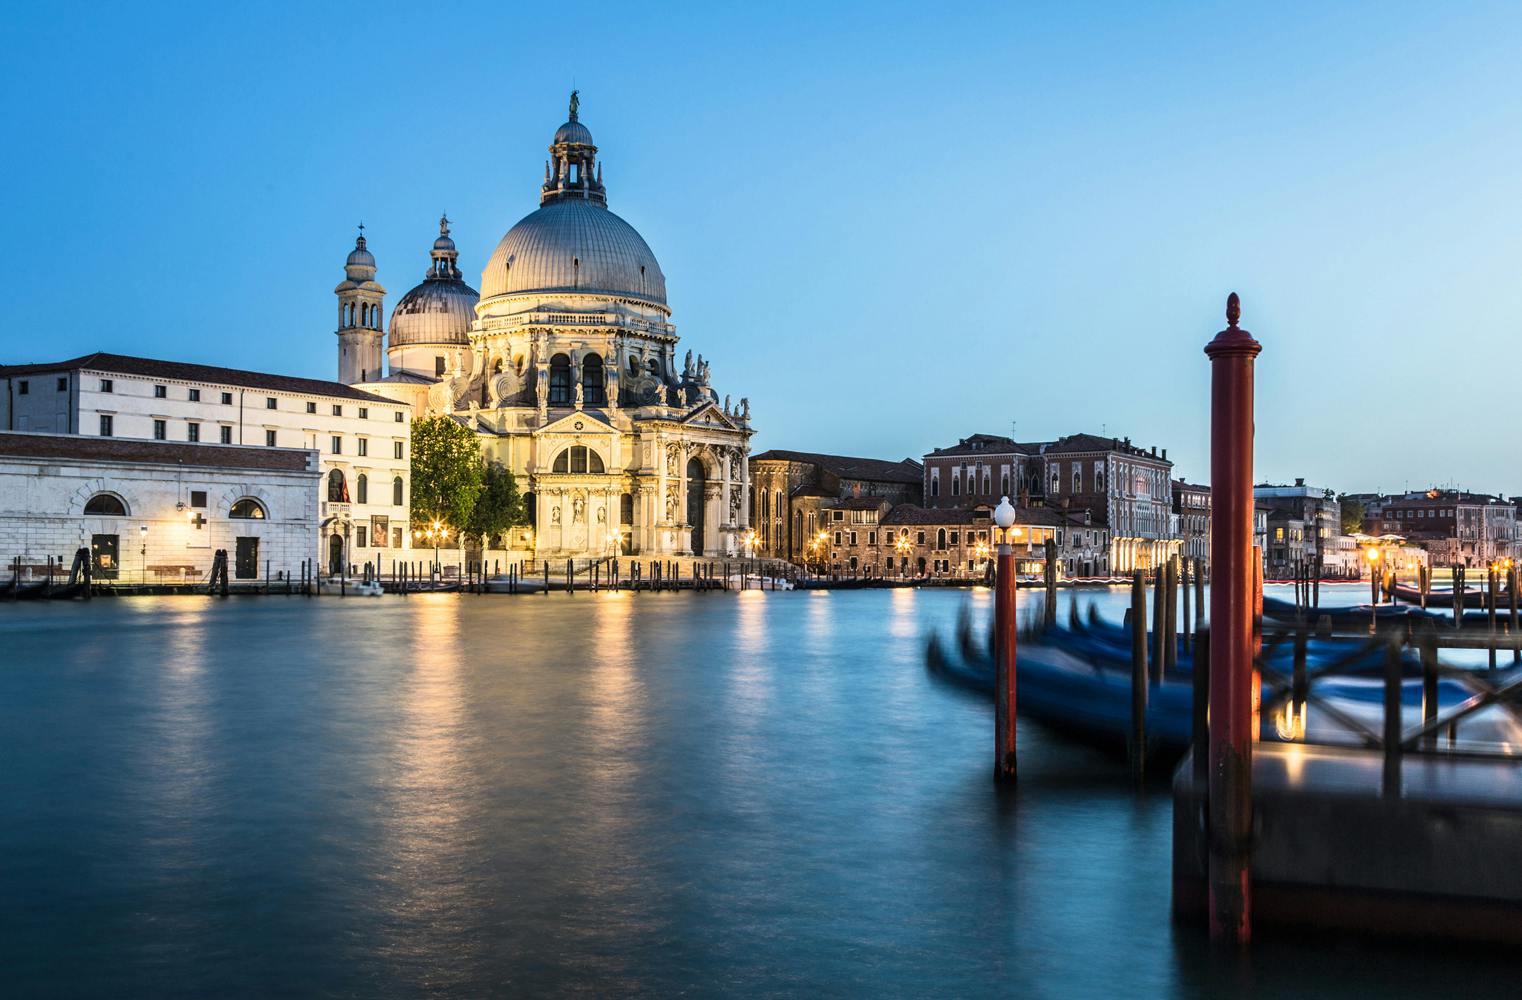 Venedigreise für 2 | mit Murano, Burano und Torcello